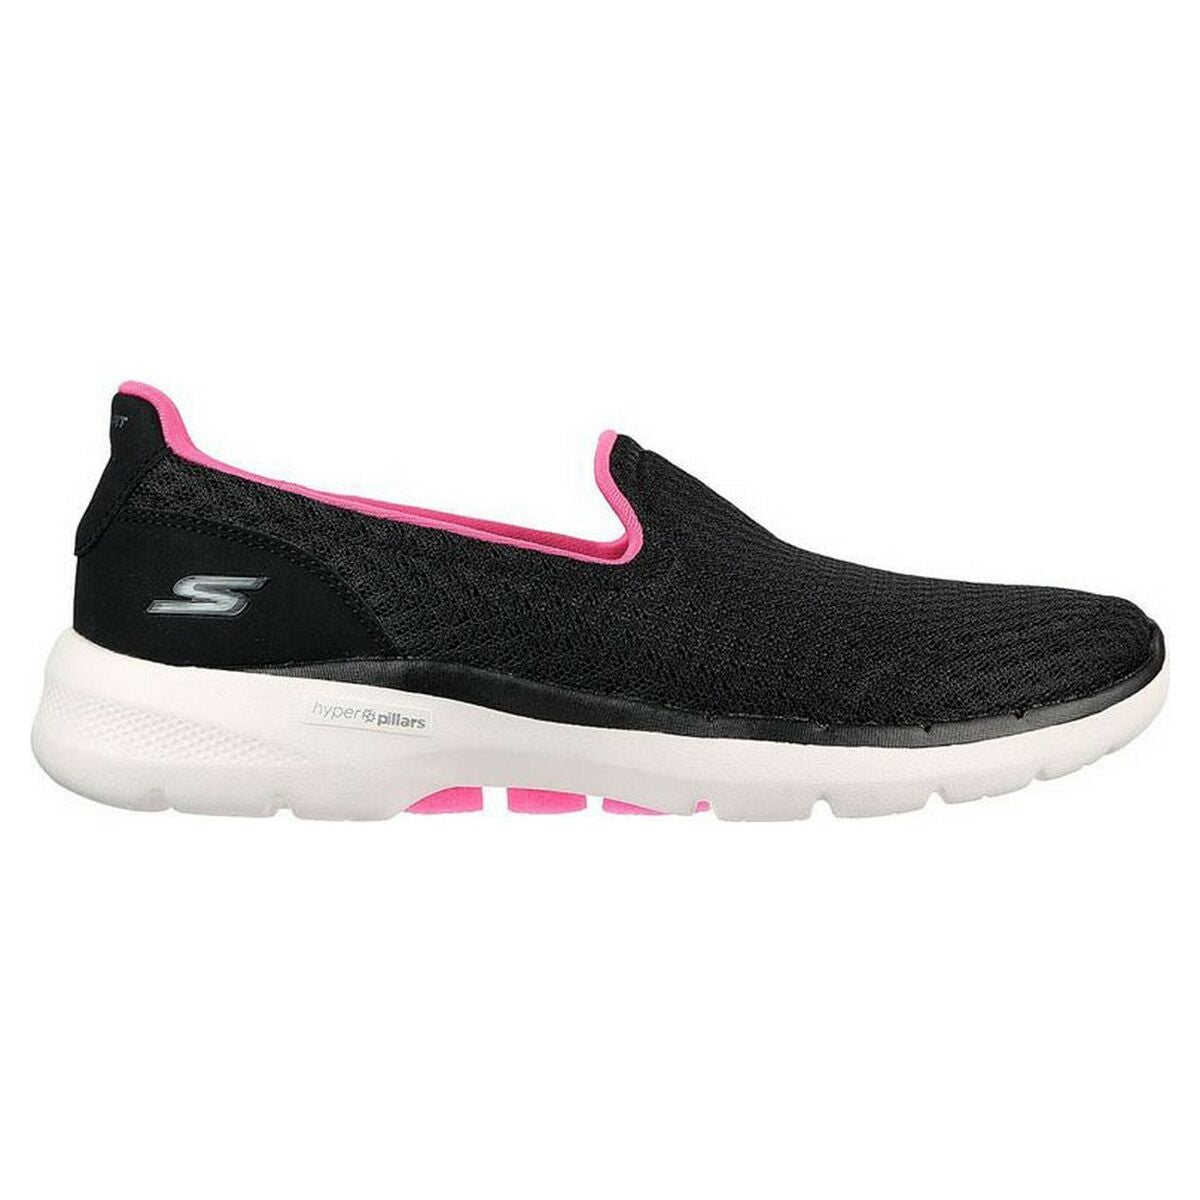 Chaussures de sport pour femme Skechers Go Walk 6 - Big Splash Noir